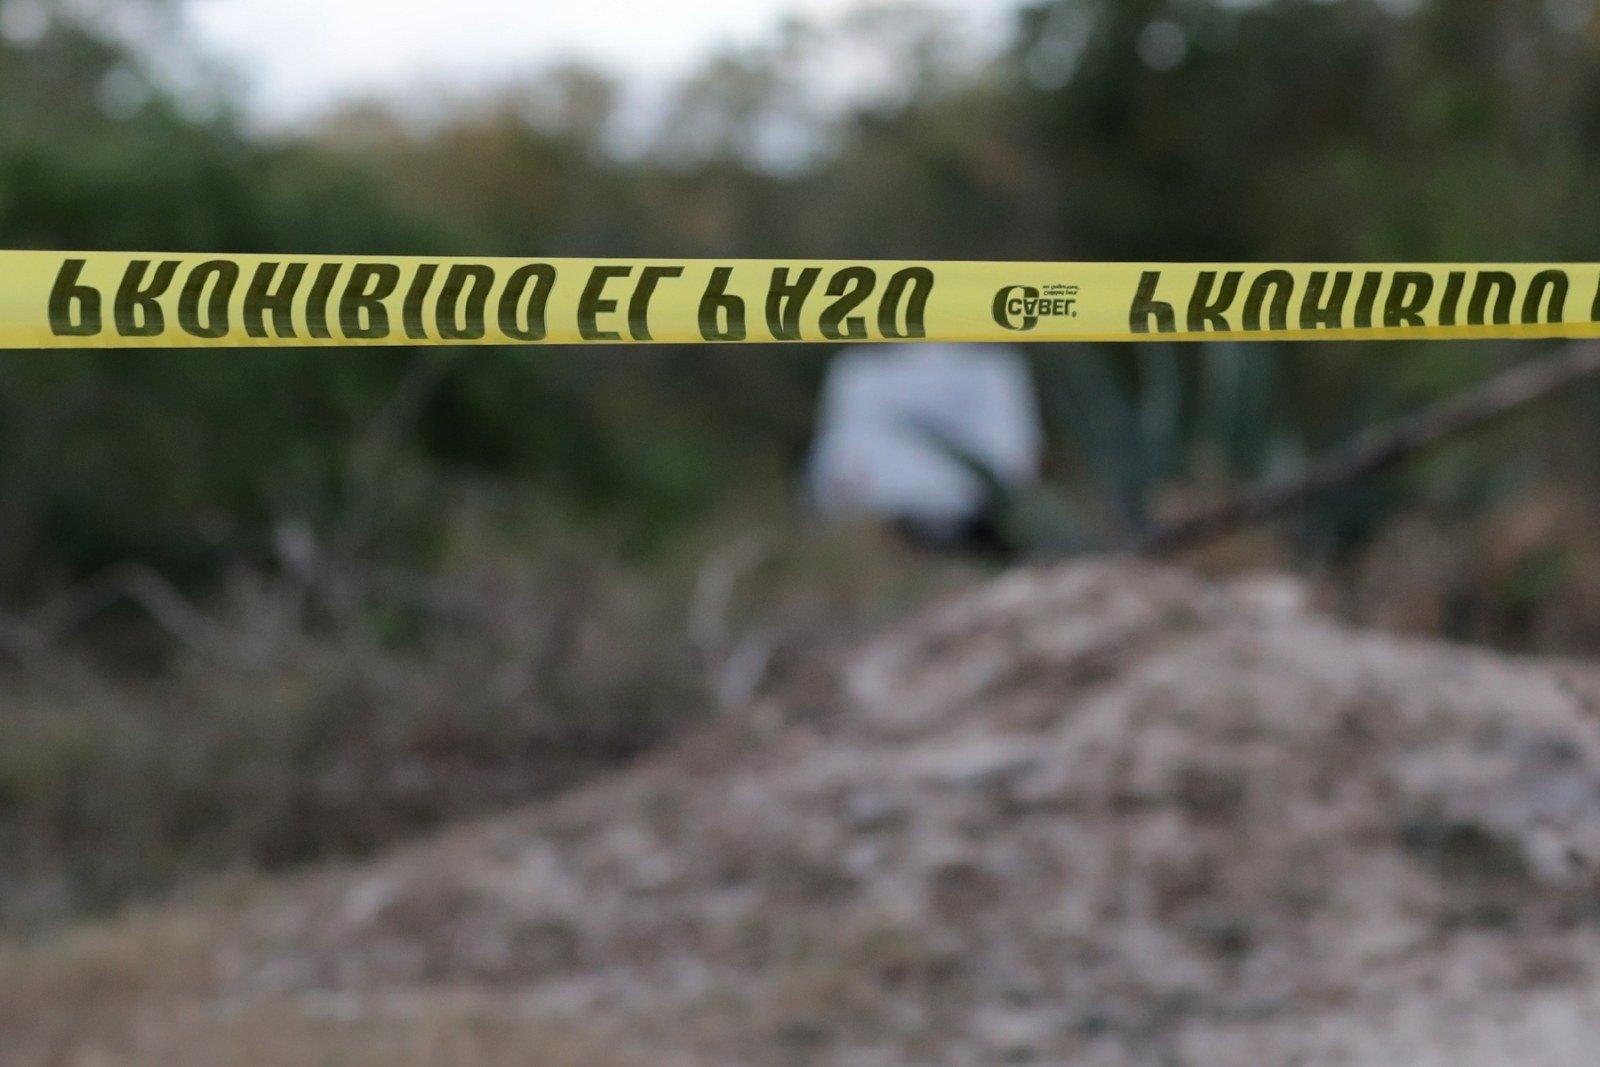 Hallan el cuerpo de una persona maniatada en un área verde en la Región 227 en Cancún